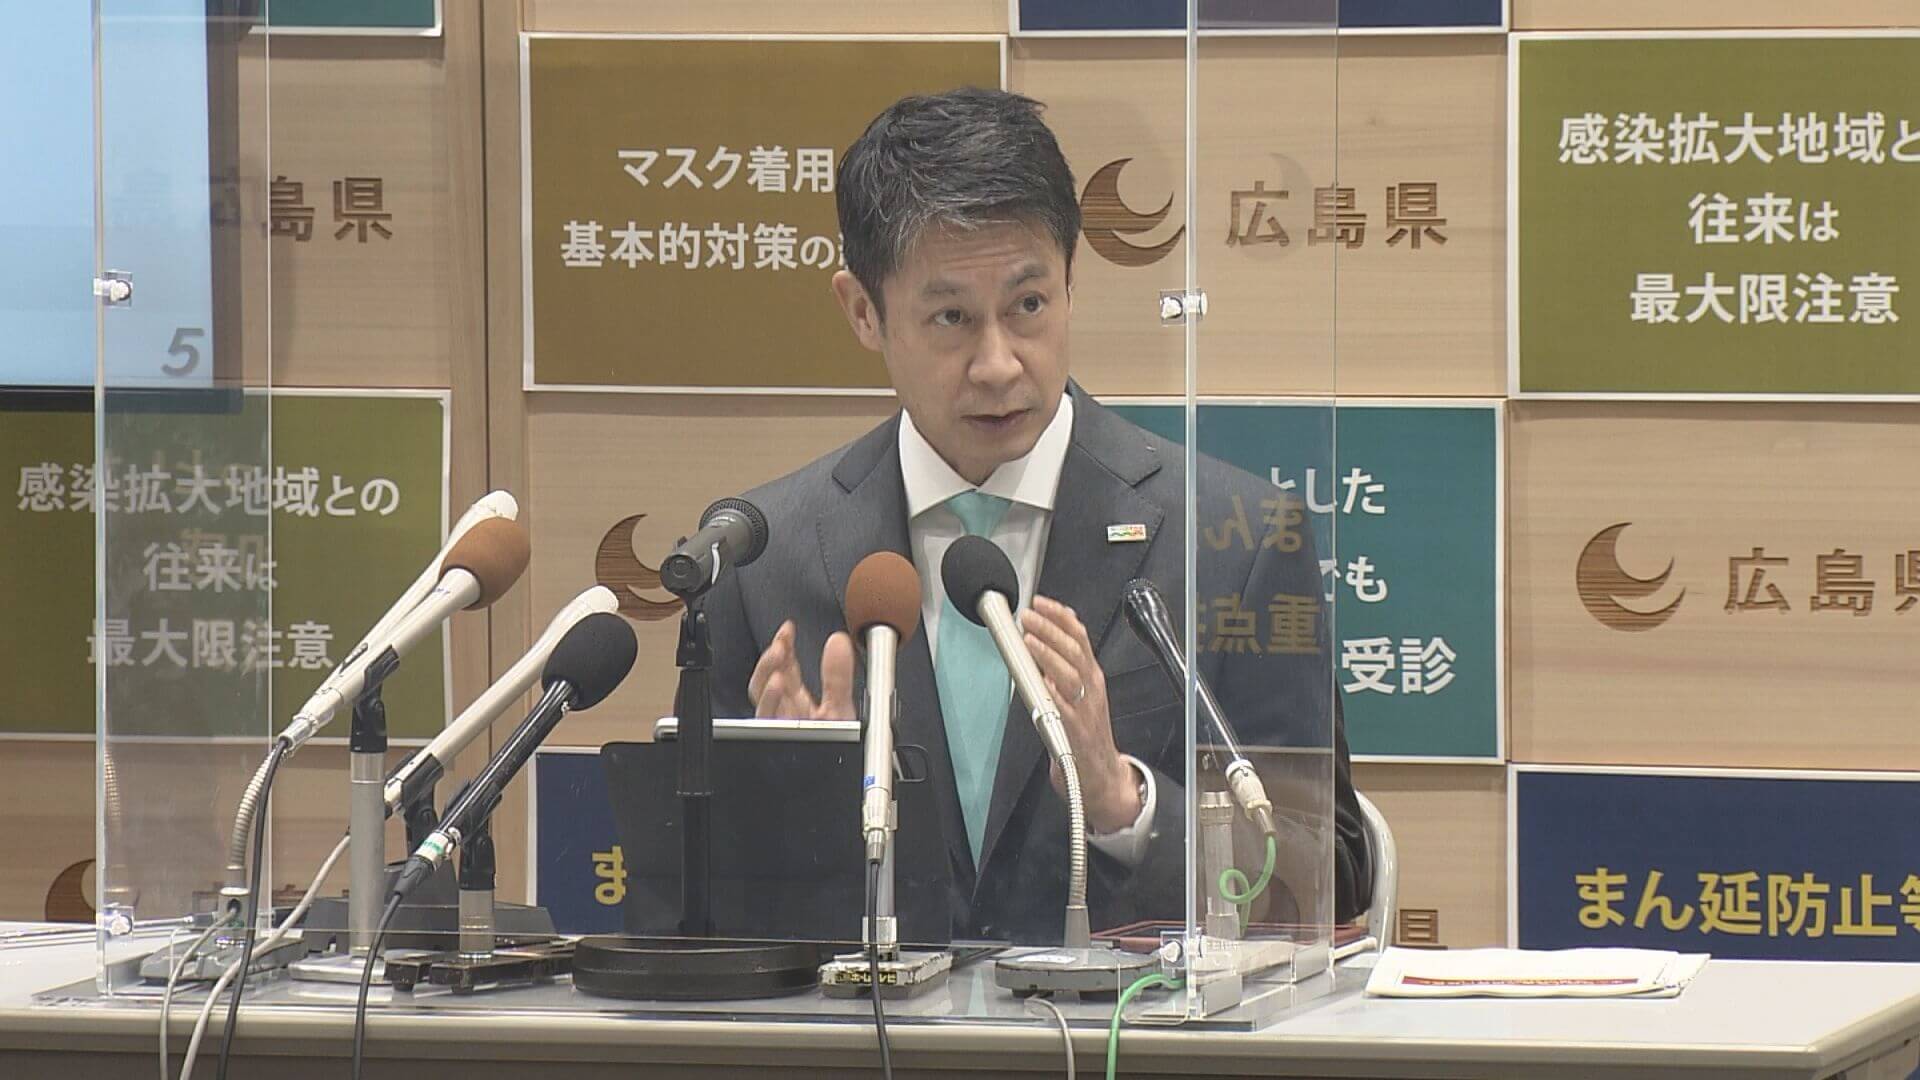 まん防止延長 知事「経済活動を段階的に再開」広島